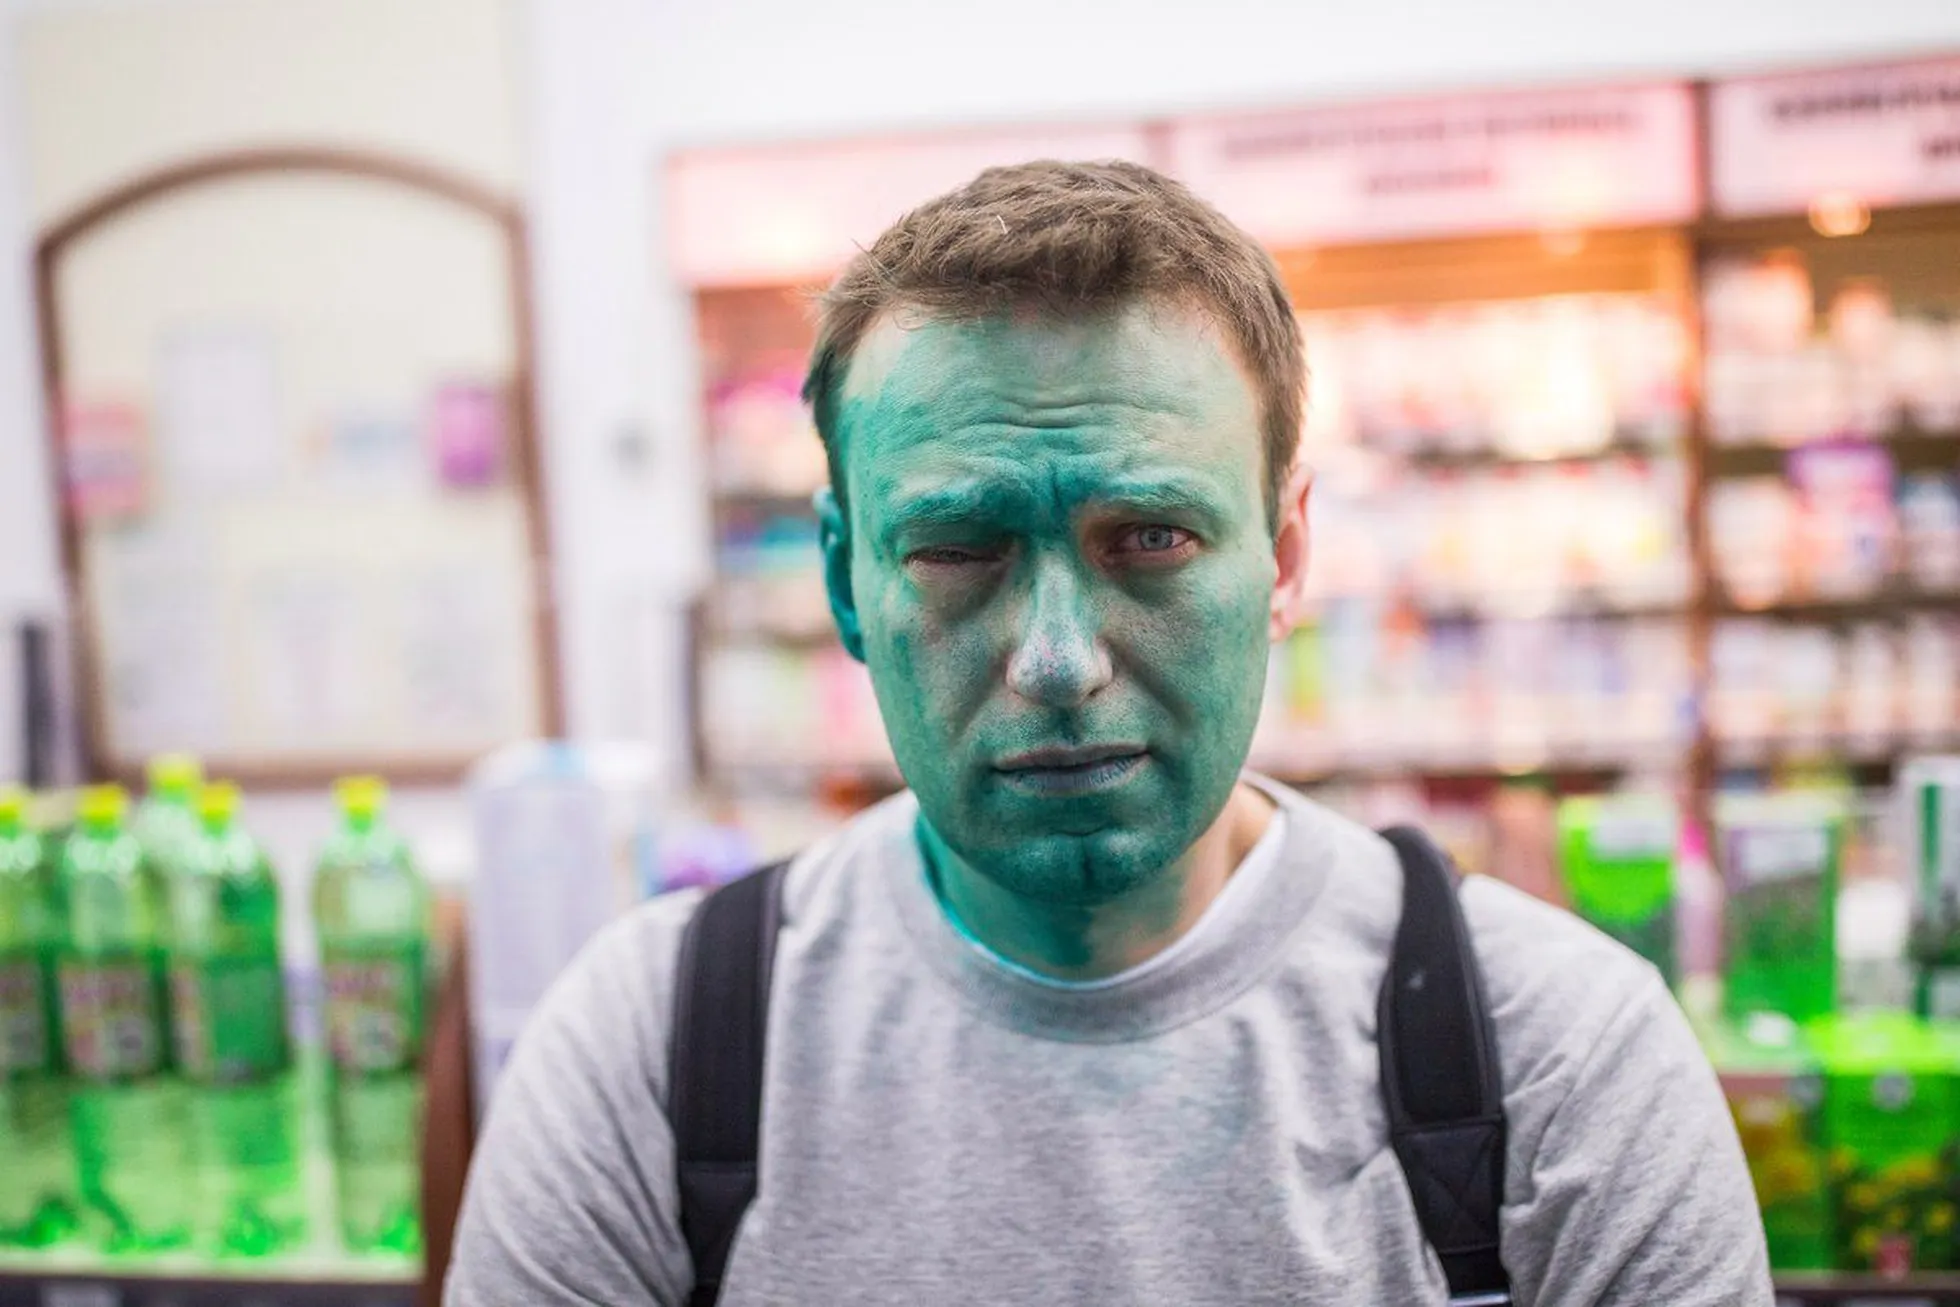 2017.a. Aleksei Navalnõi pärast zeljonka-rünnakut, kui opositsioonipoliitikule selle aasta aprillis oma Moskva kontori lähistel briljantrohelist näkku visati.